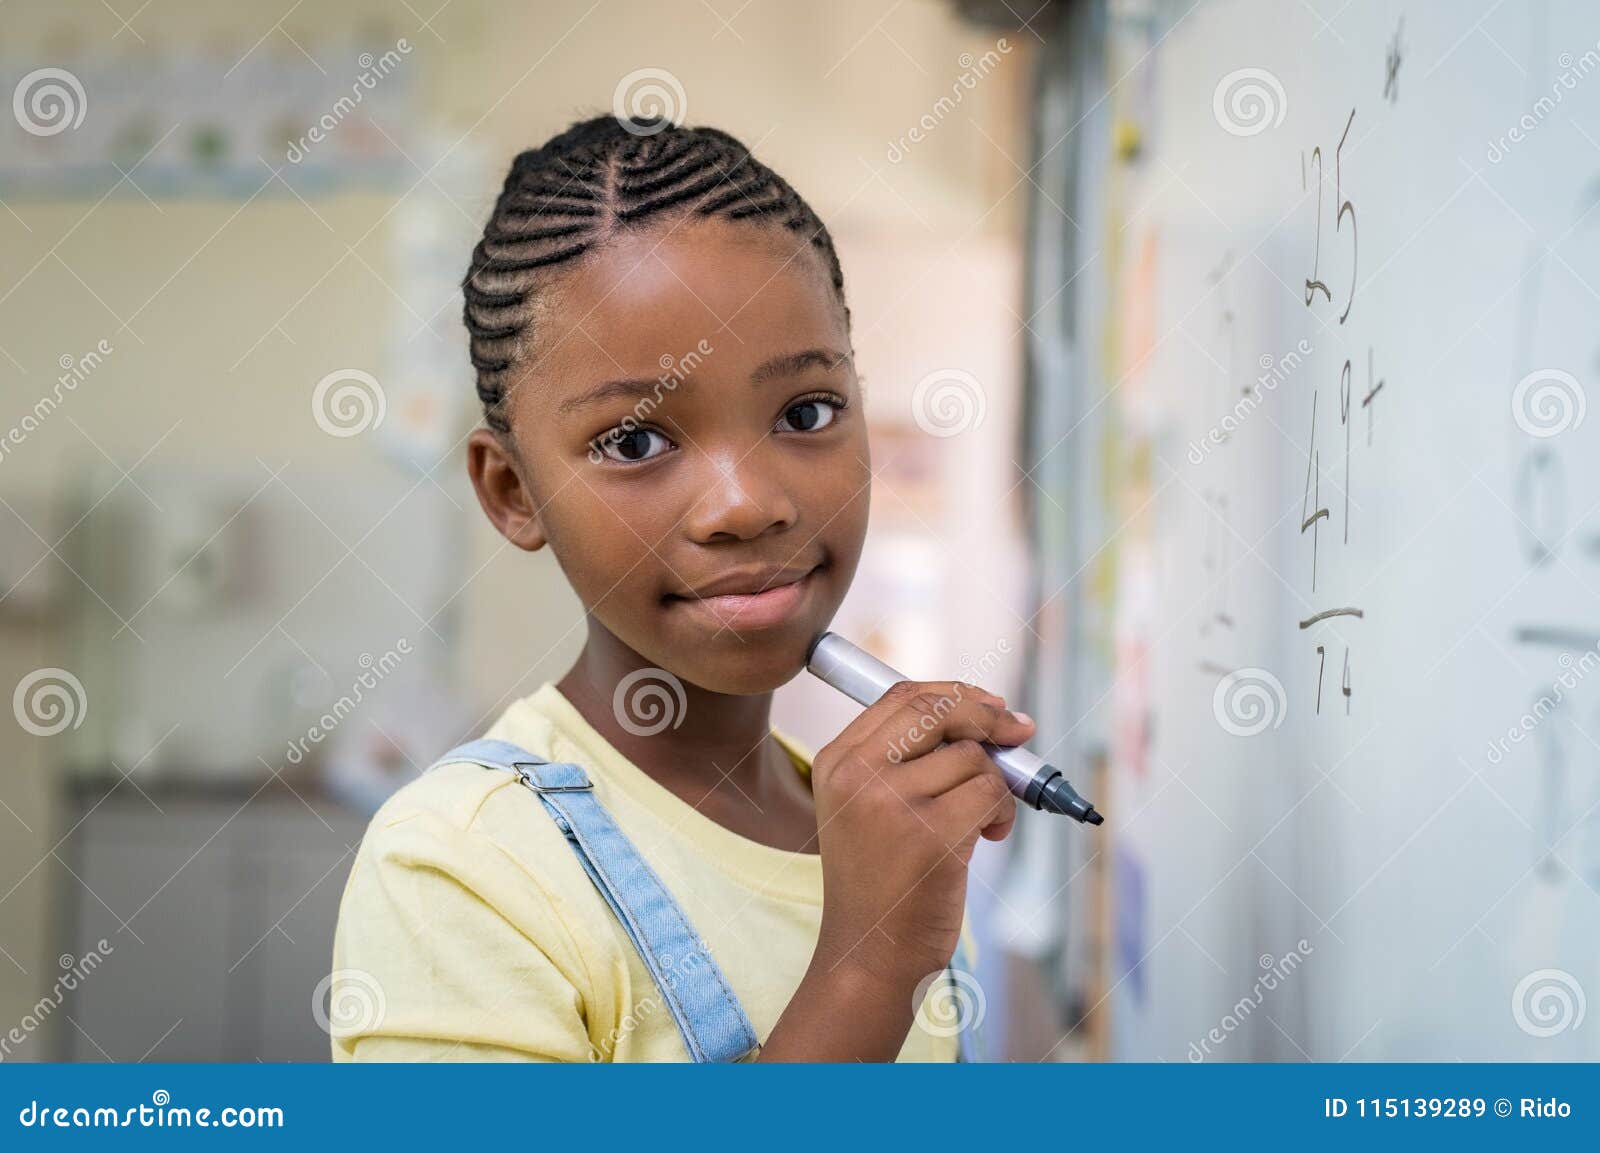 girl doing math at whiteboard